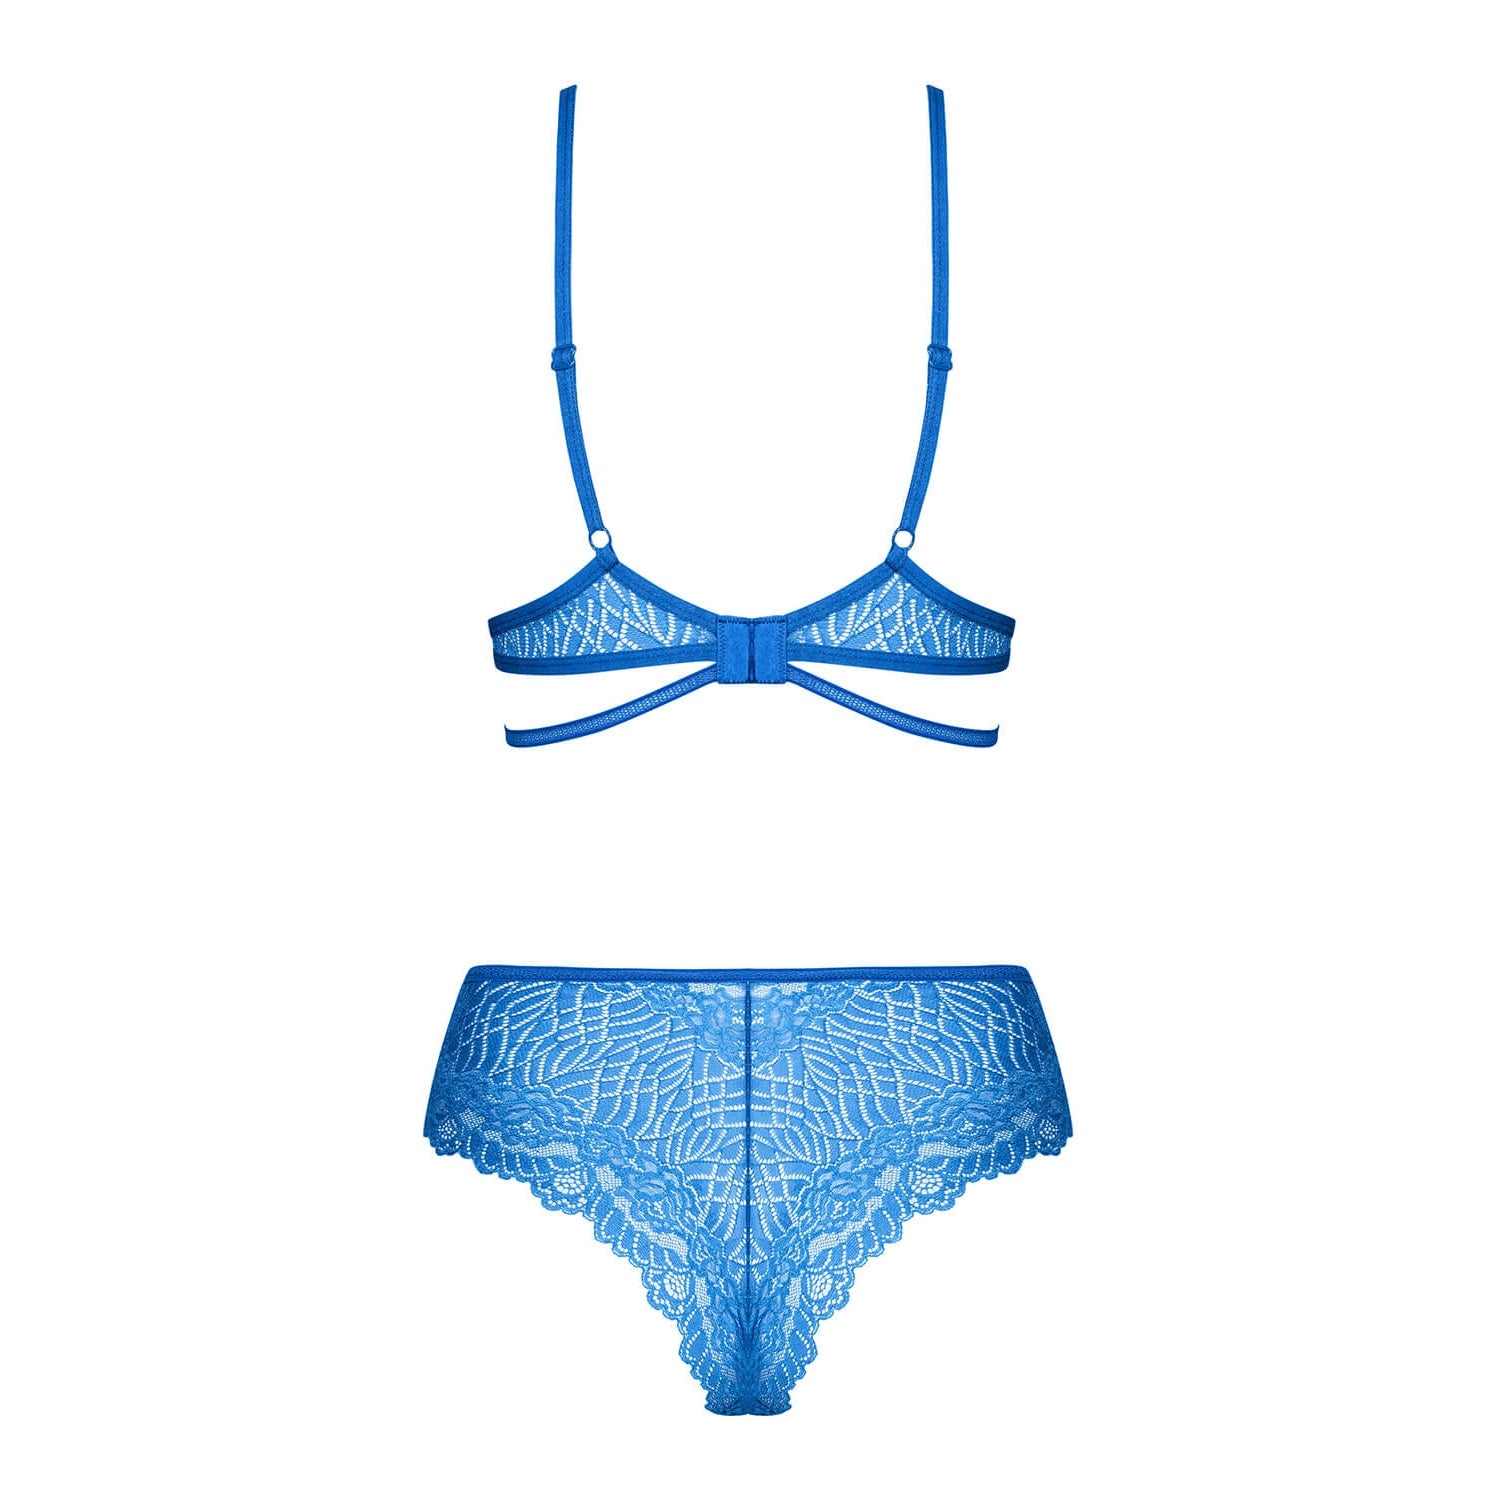 Obsessive, Bluellia blå bh sæt - Selvsikker elegance: Blå blonder, perfekt pasform. Obsessive luksus.